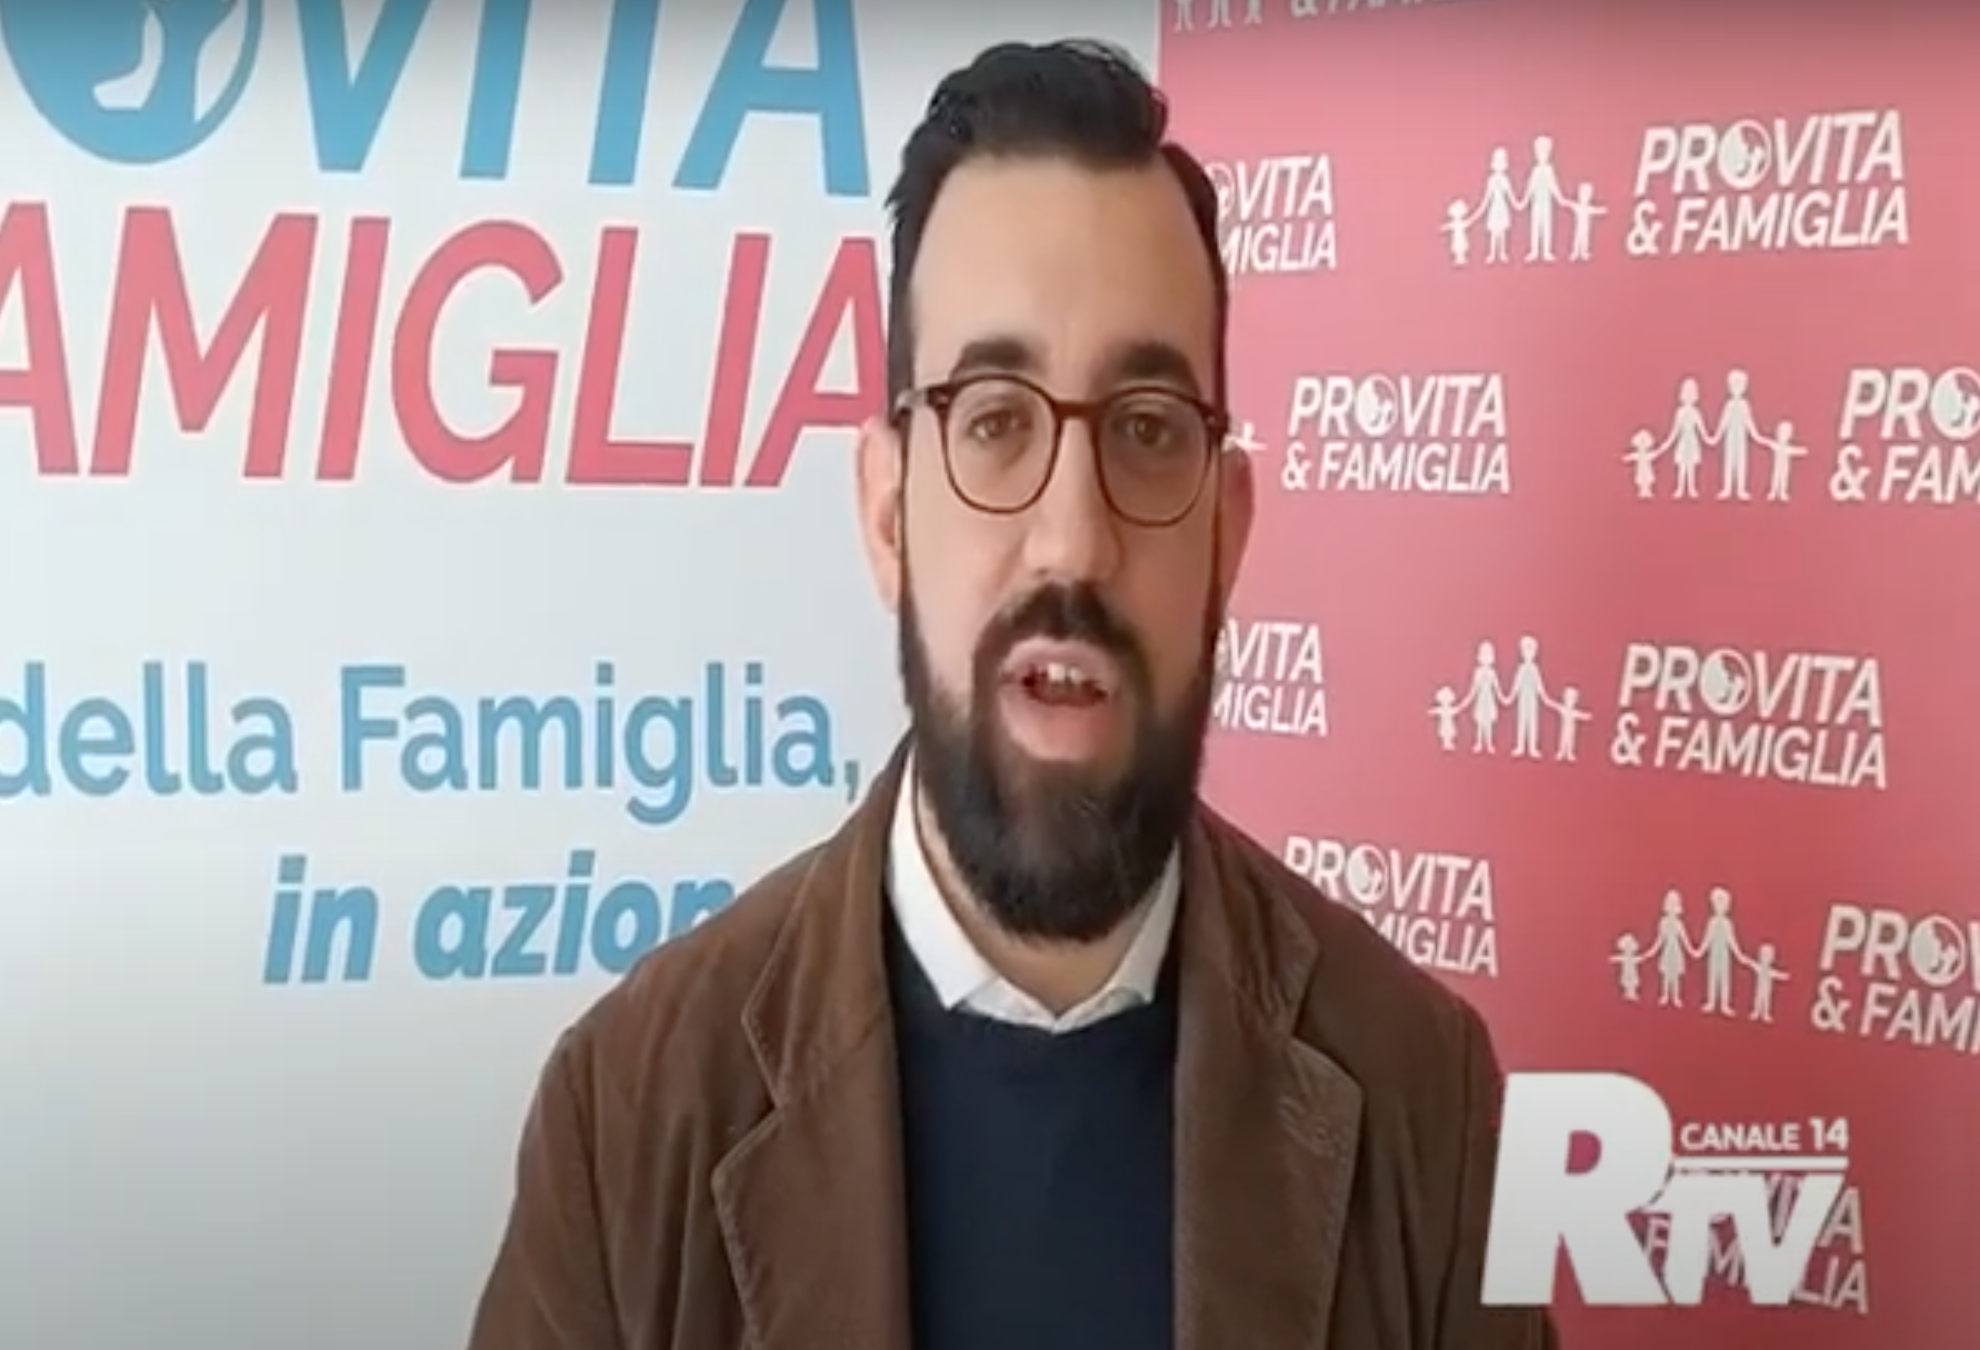 Manifesti sull'aborto rimossi a Reggio Calabria. La risposta di Jacopo Coghe al sindaco Falcomatà - VIDEO 1